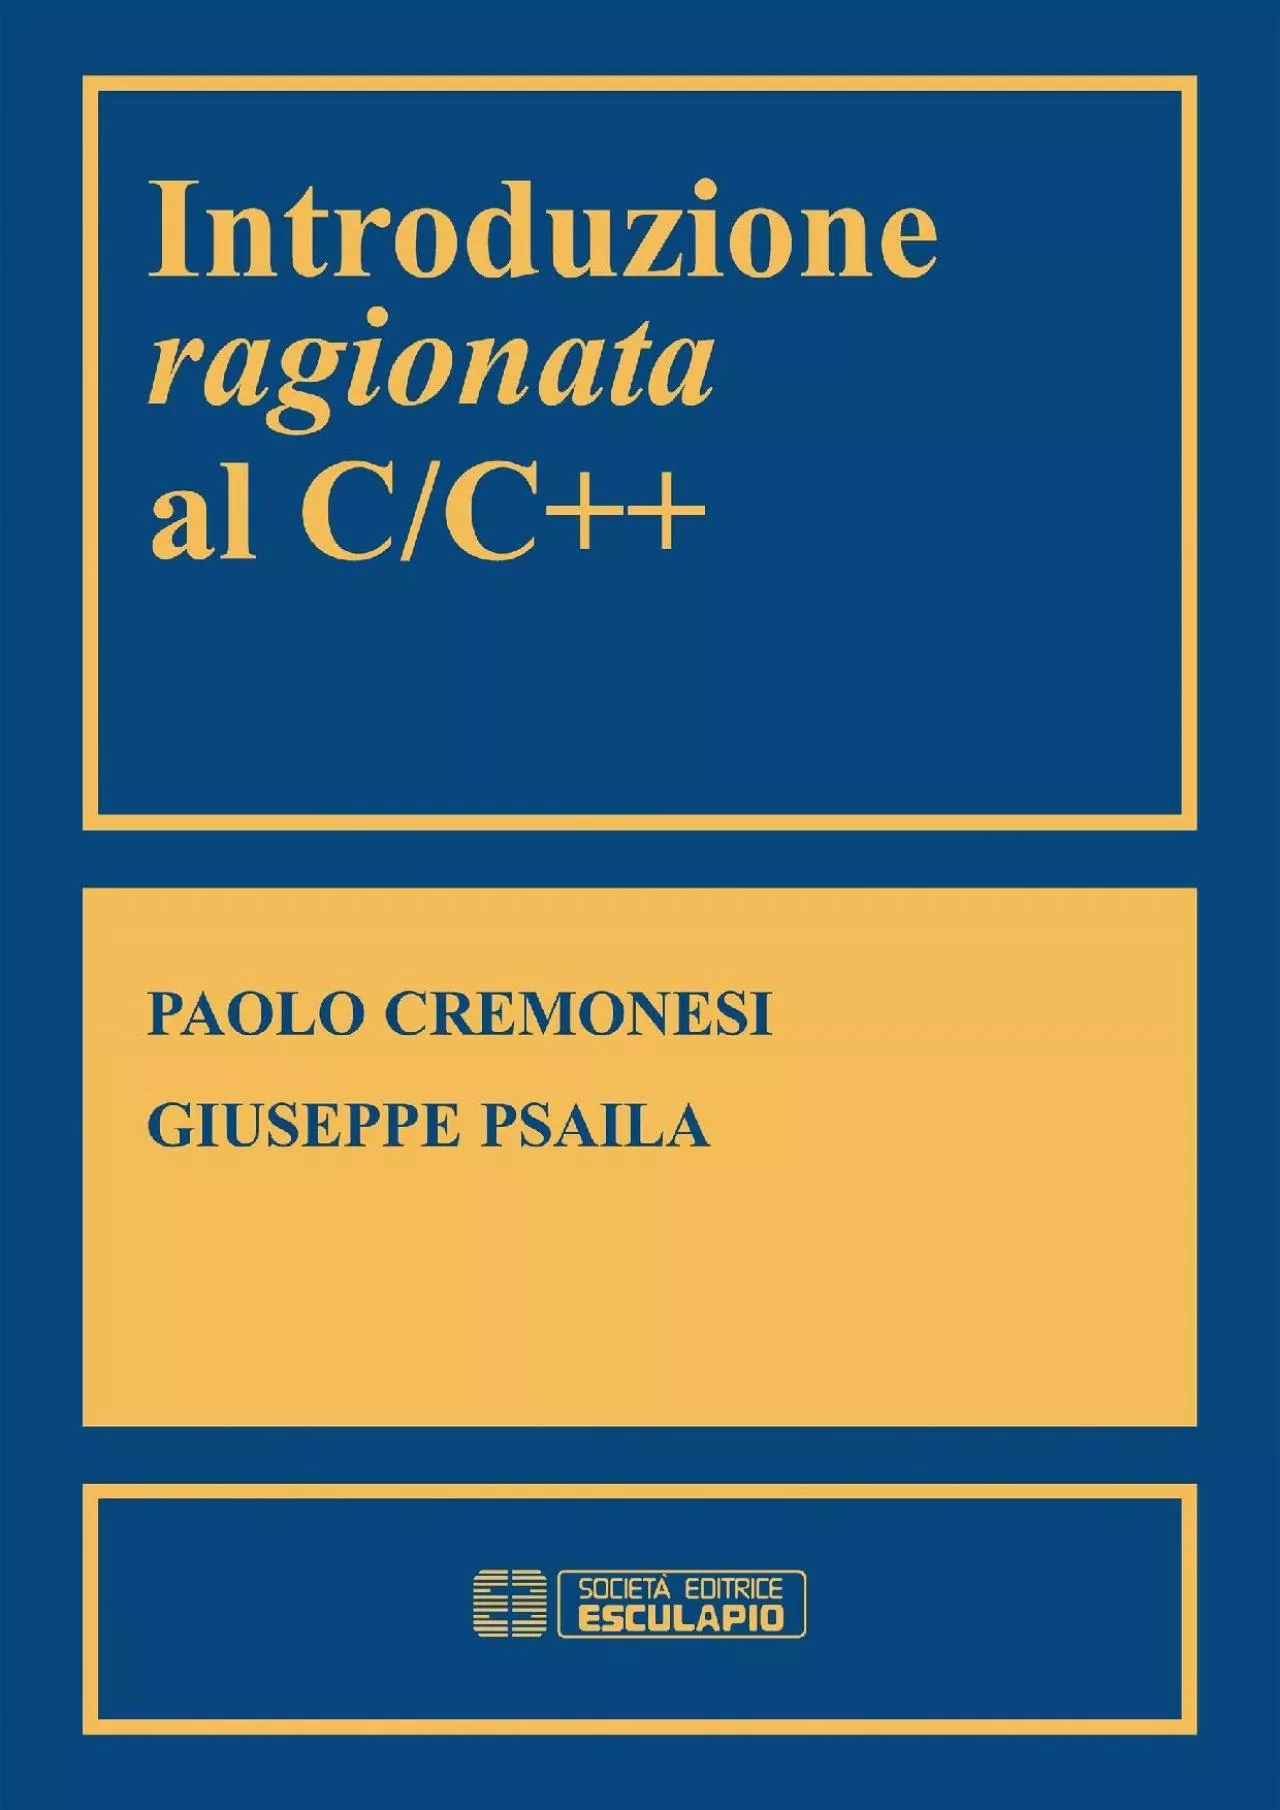 [READING BOOK]-Introduzione ragionata al C/C++ (Italian Edition)